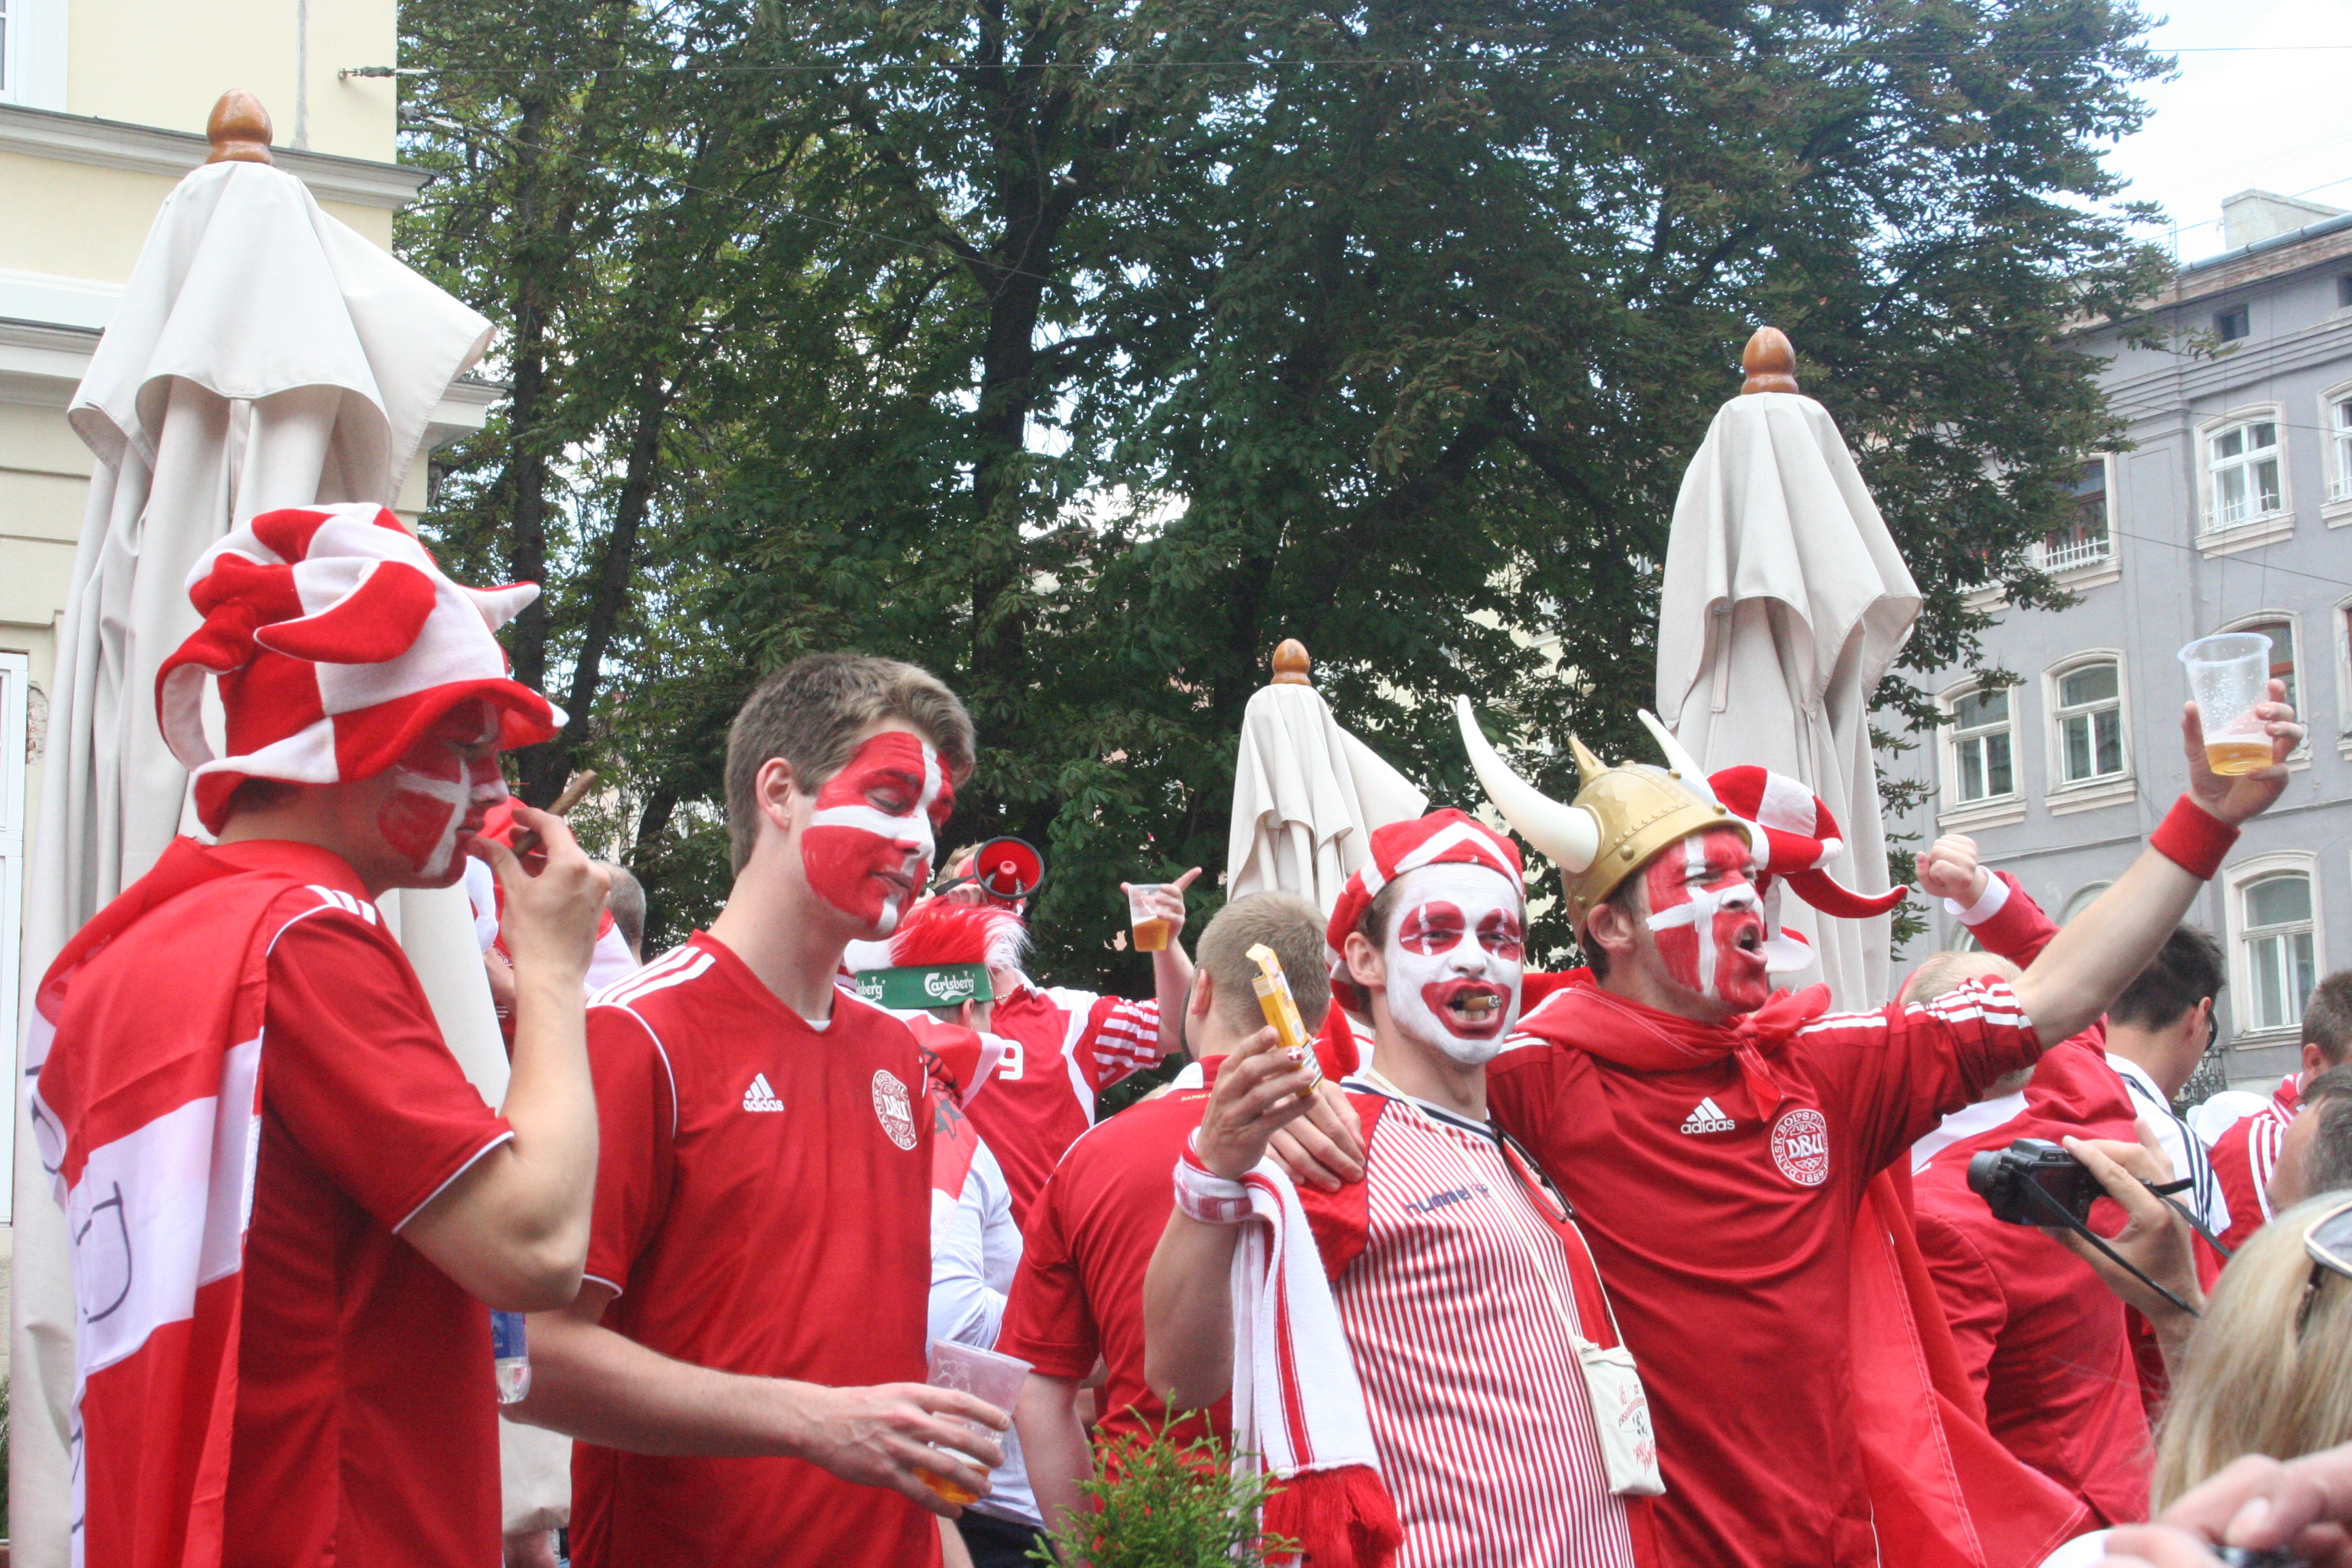 14 людей звернулося за медичною допомогою під час матчу Данія-Португалія у Львові